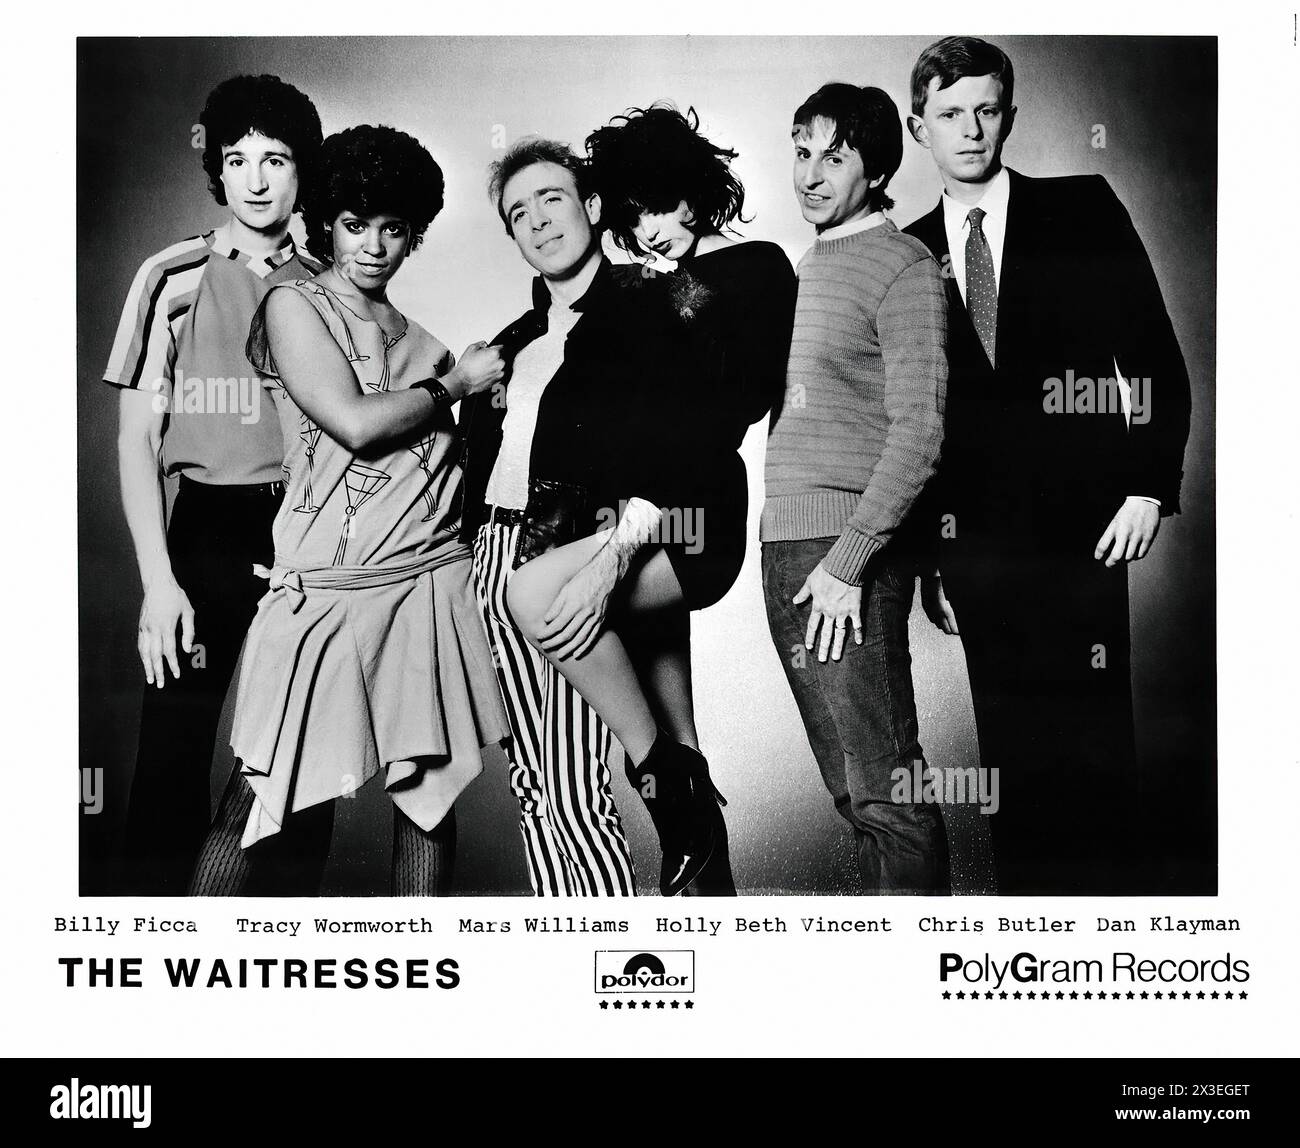 Le cameriere - - immagine promozionale dell'etichetta musicale d'epoca - fotografo sconosciuto, solo per uso editoriale Foto Stock